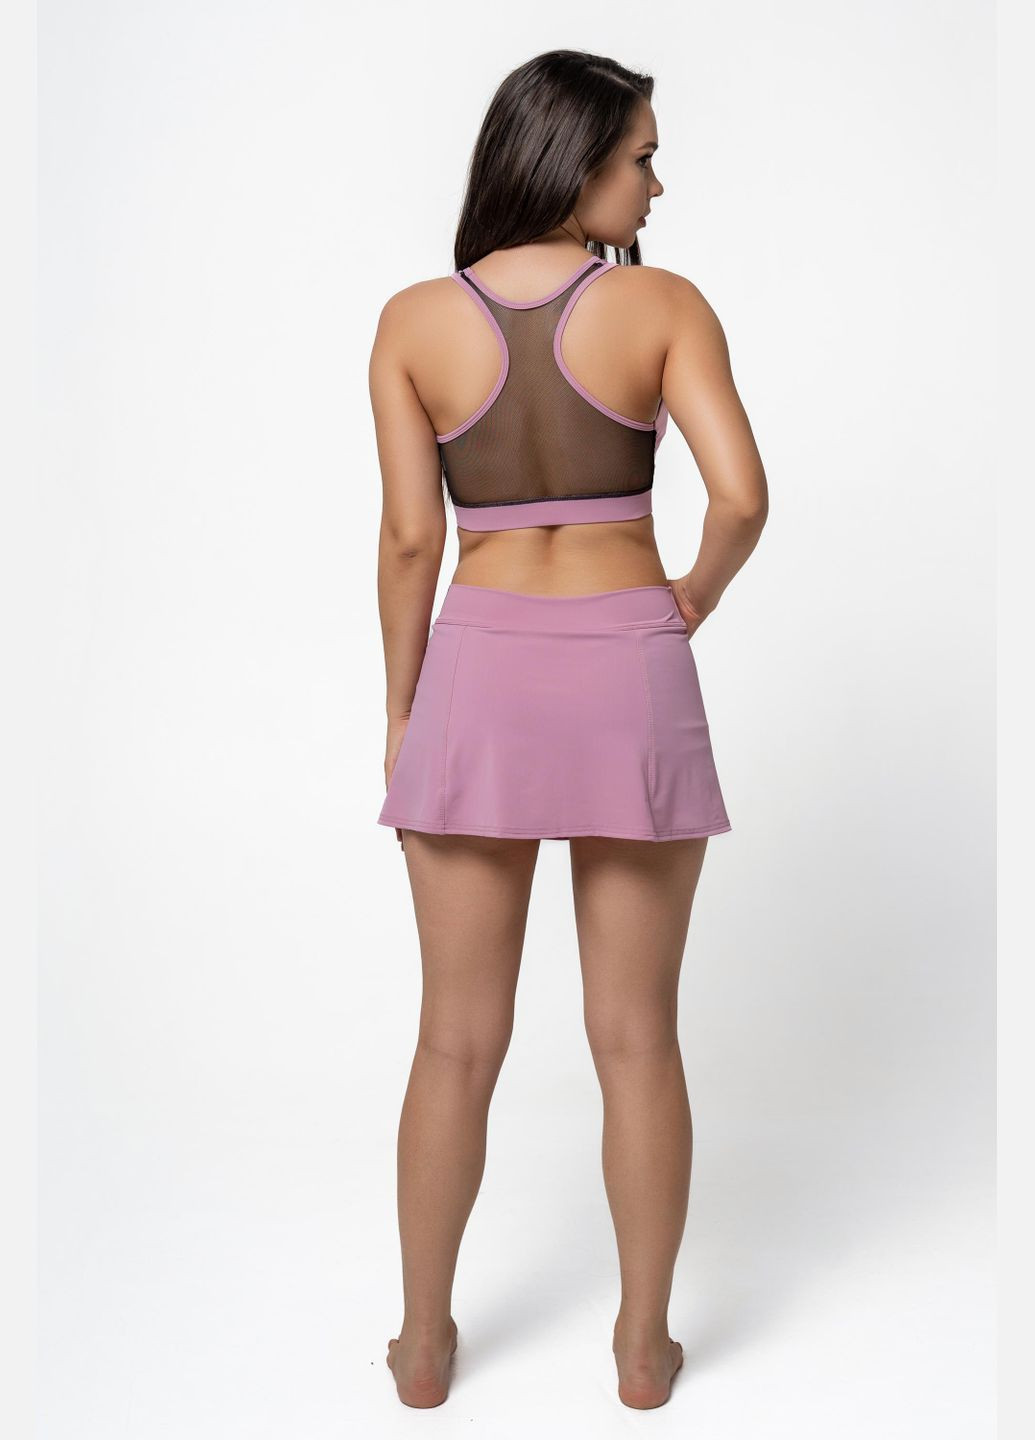 Женская спортивная юбка-шорты S пудровая Opt-kolo (286330519)